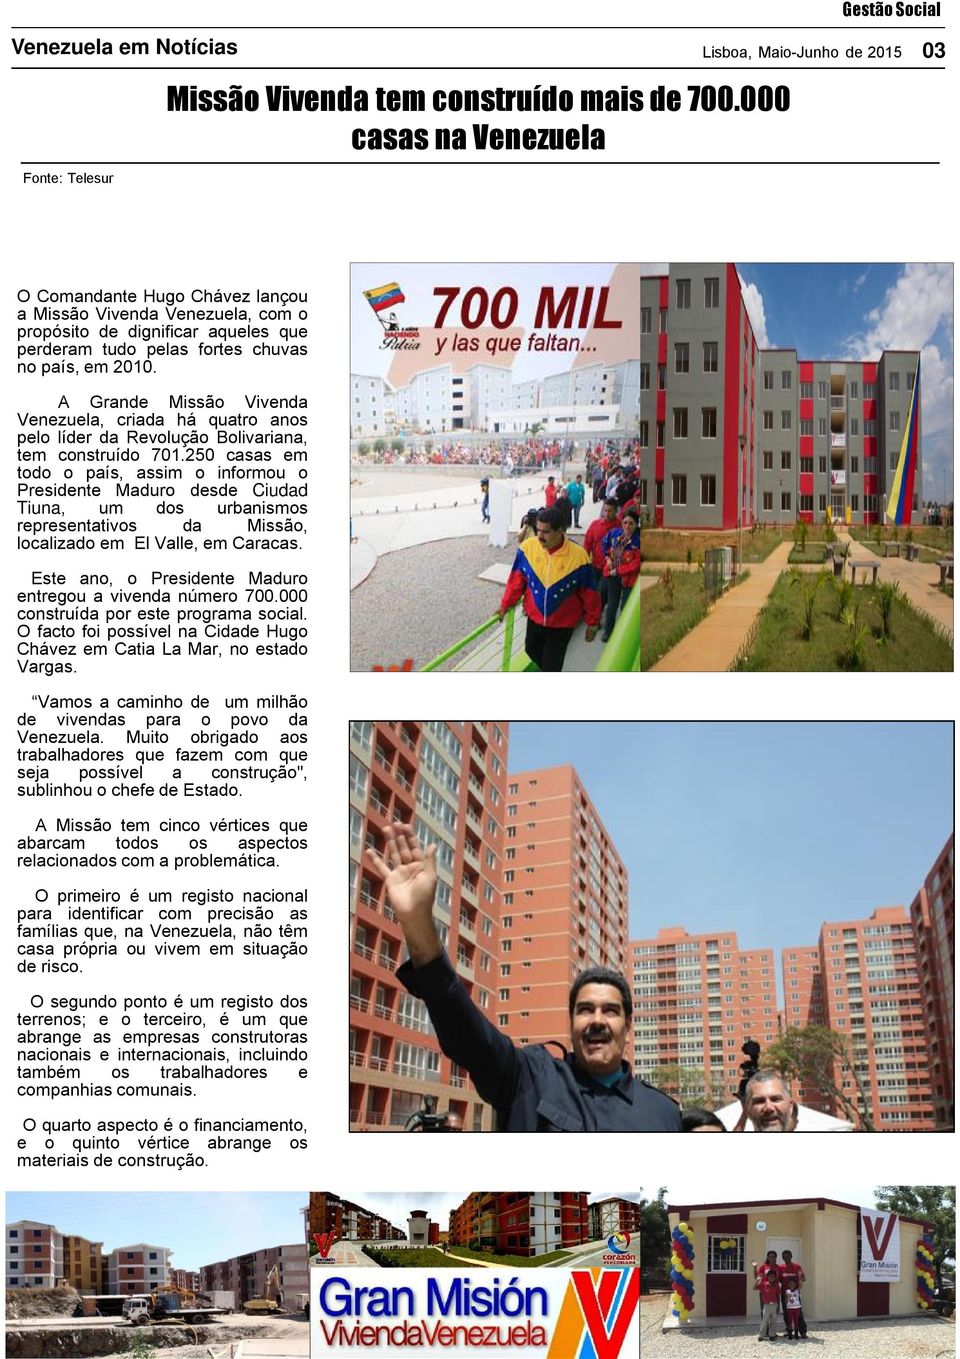 A Grande Missão Vivenda Venezuela, criada há quatro anos pelo líder da Revolução Bolivariana, tem construído 701.